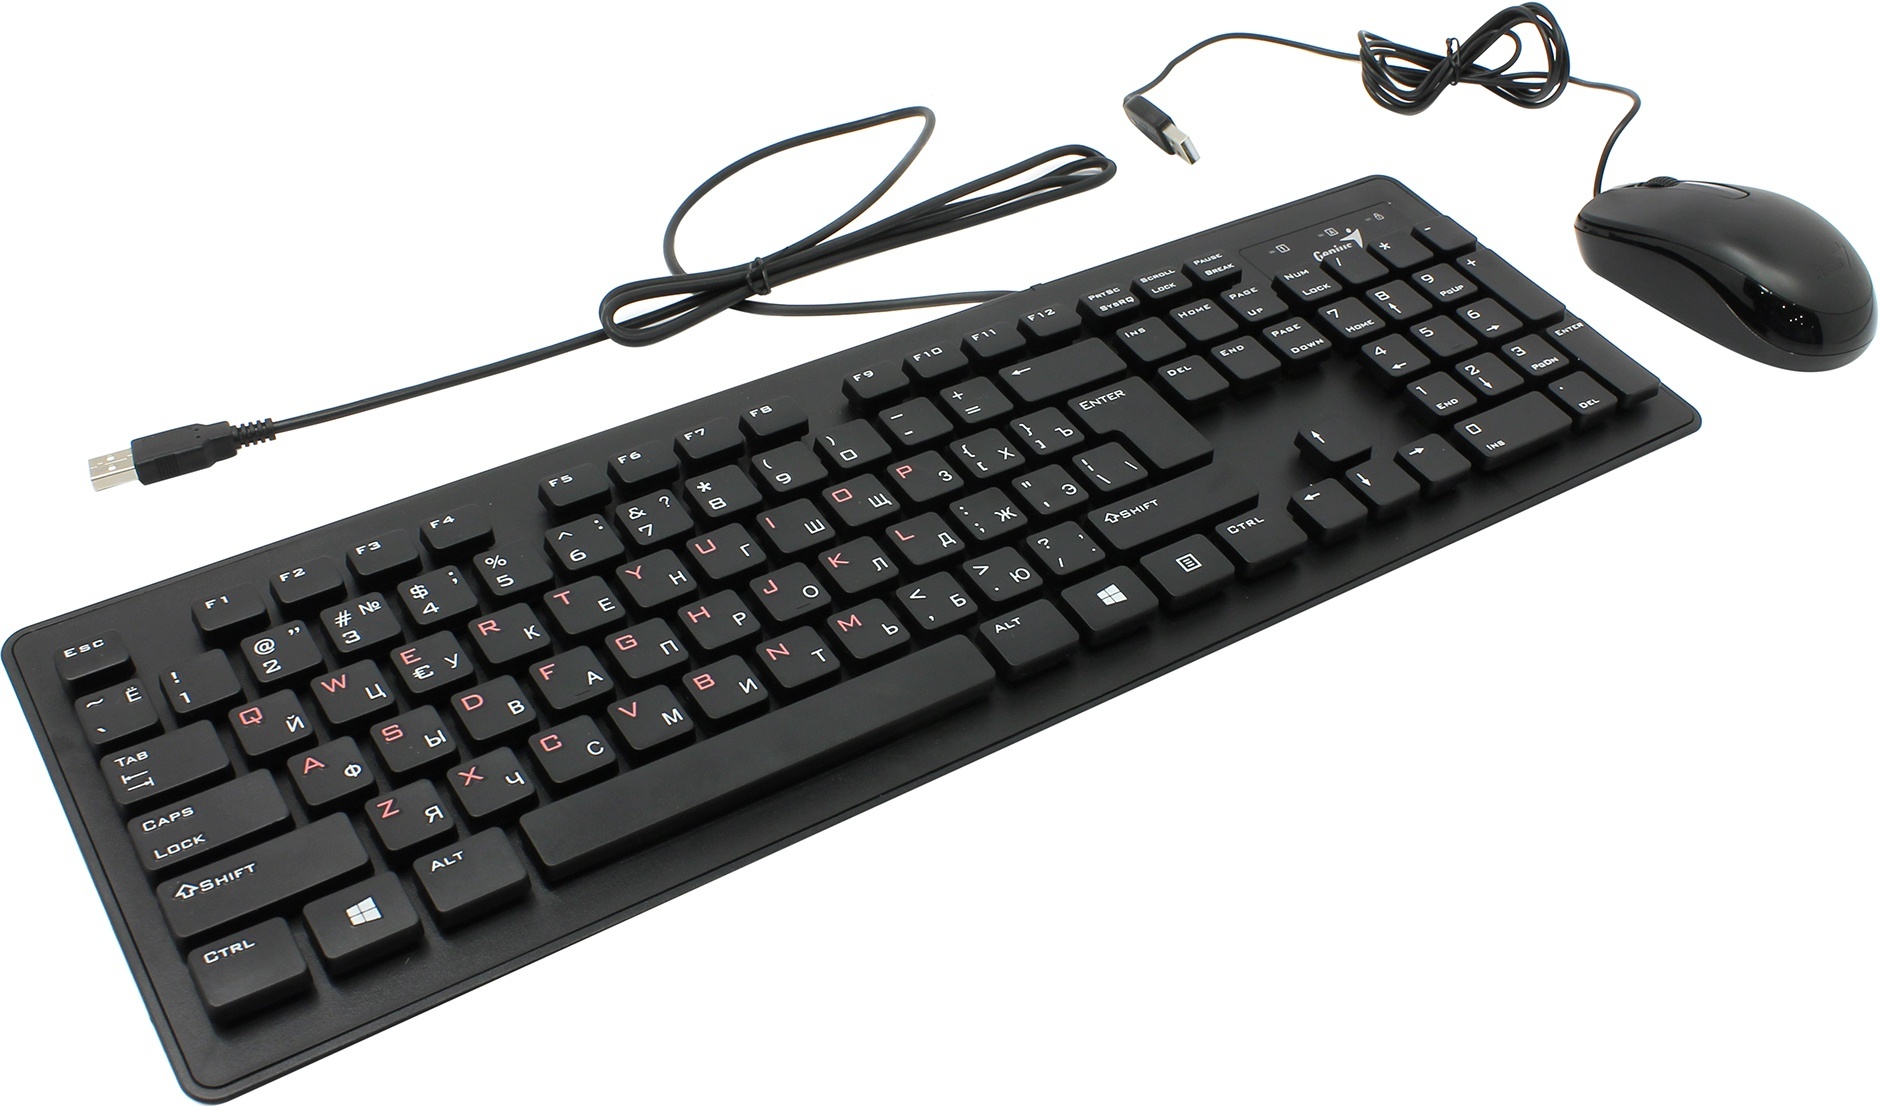 купить Комплект Клавиатура   Мышь, Genius, SLIMSTAR C130, USB, Чёрный в Алматы